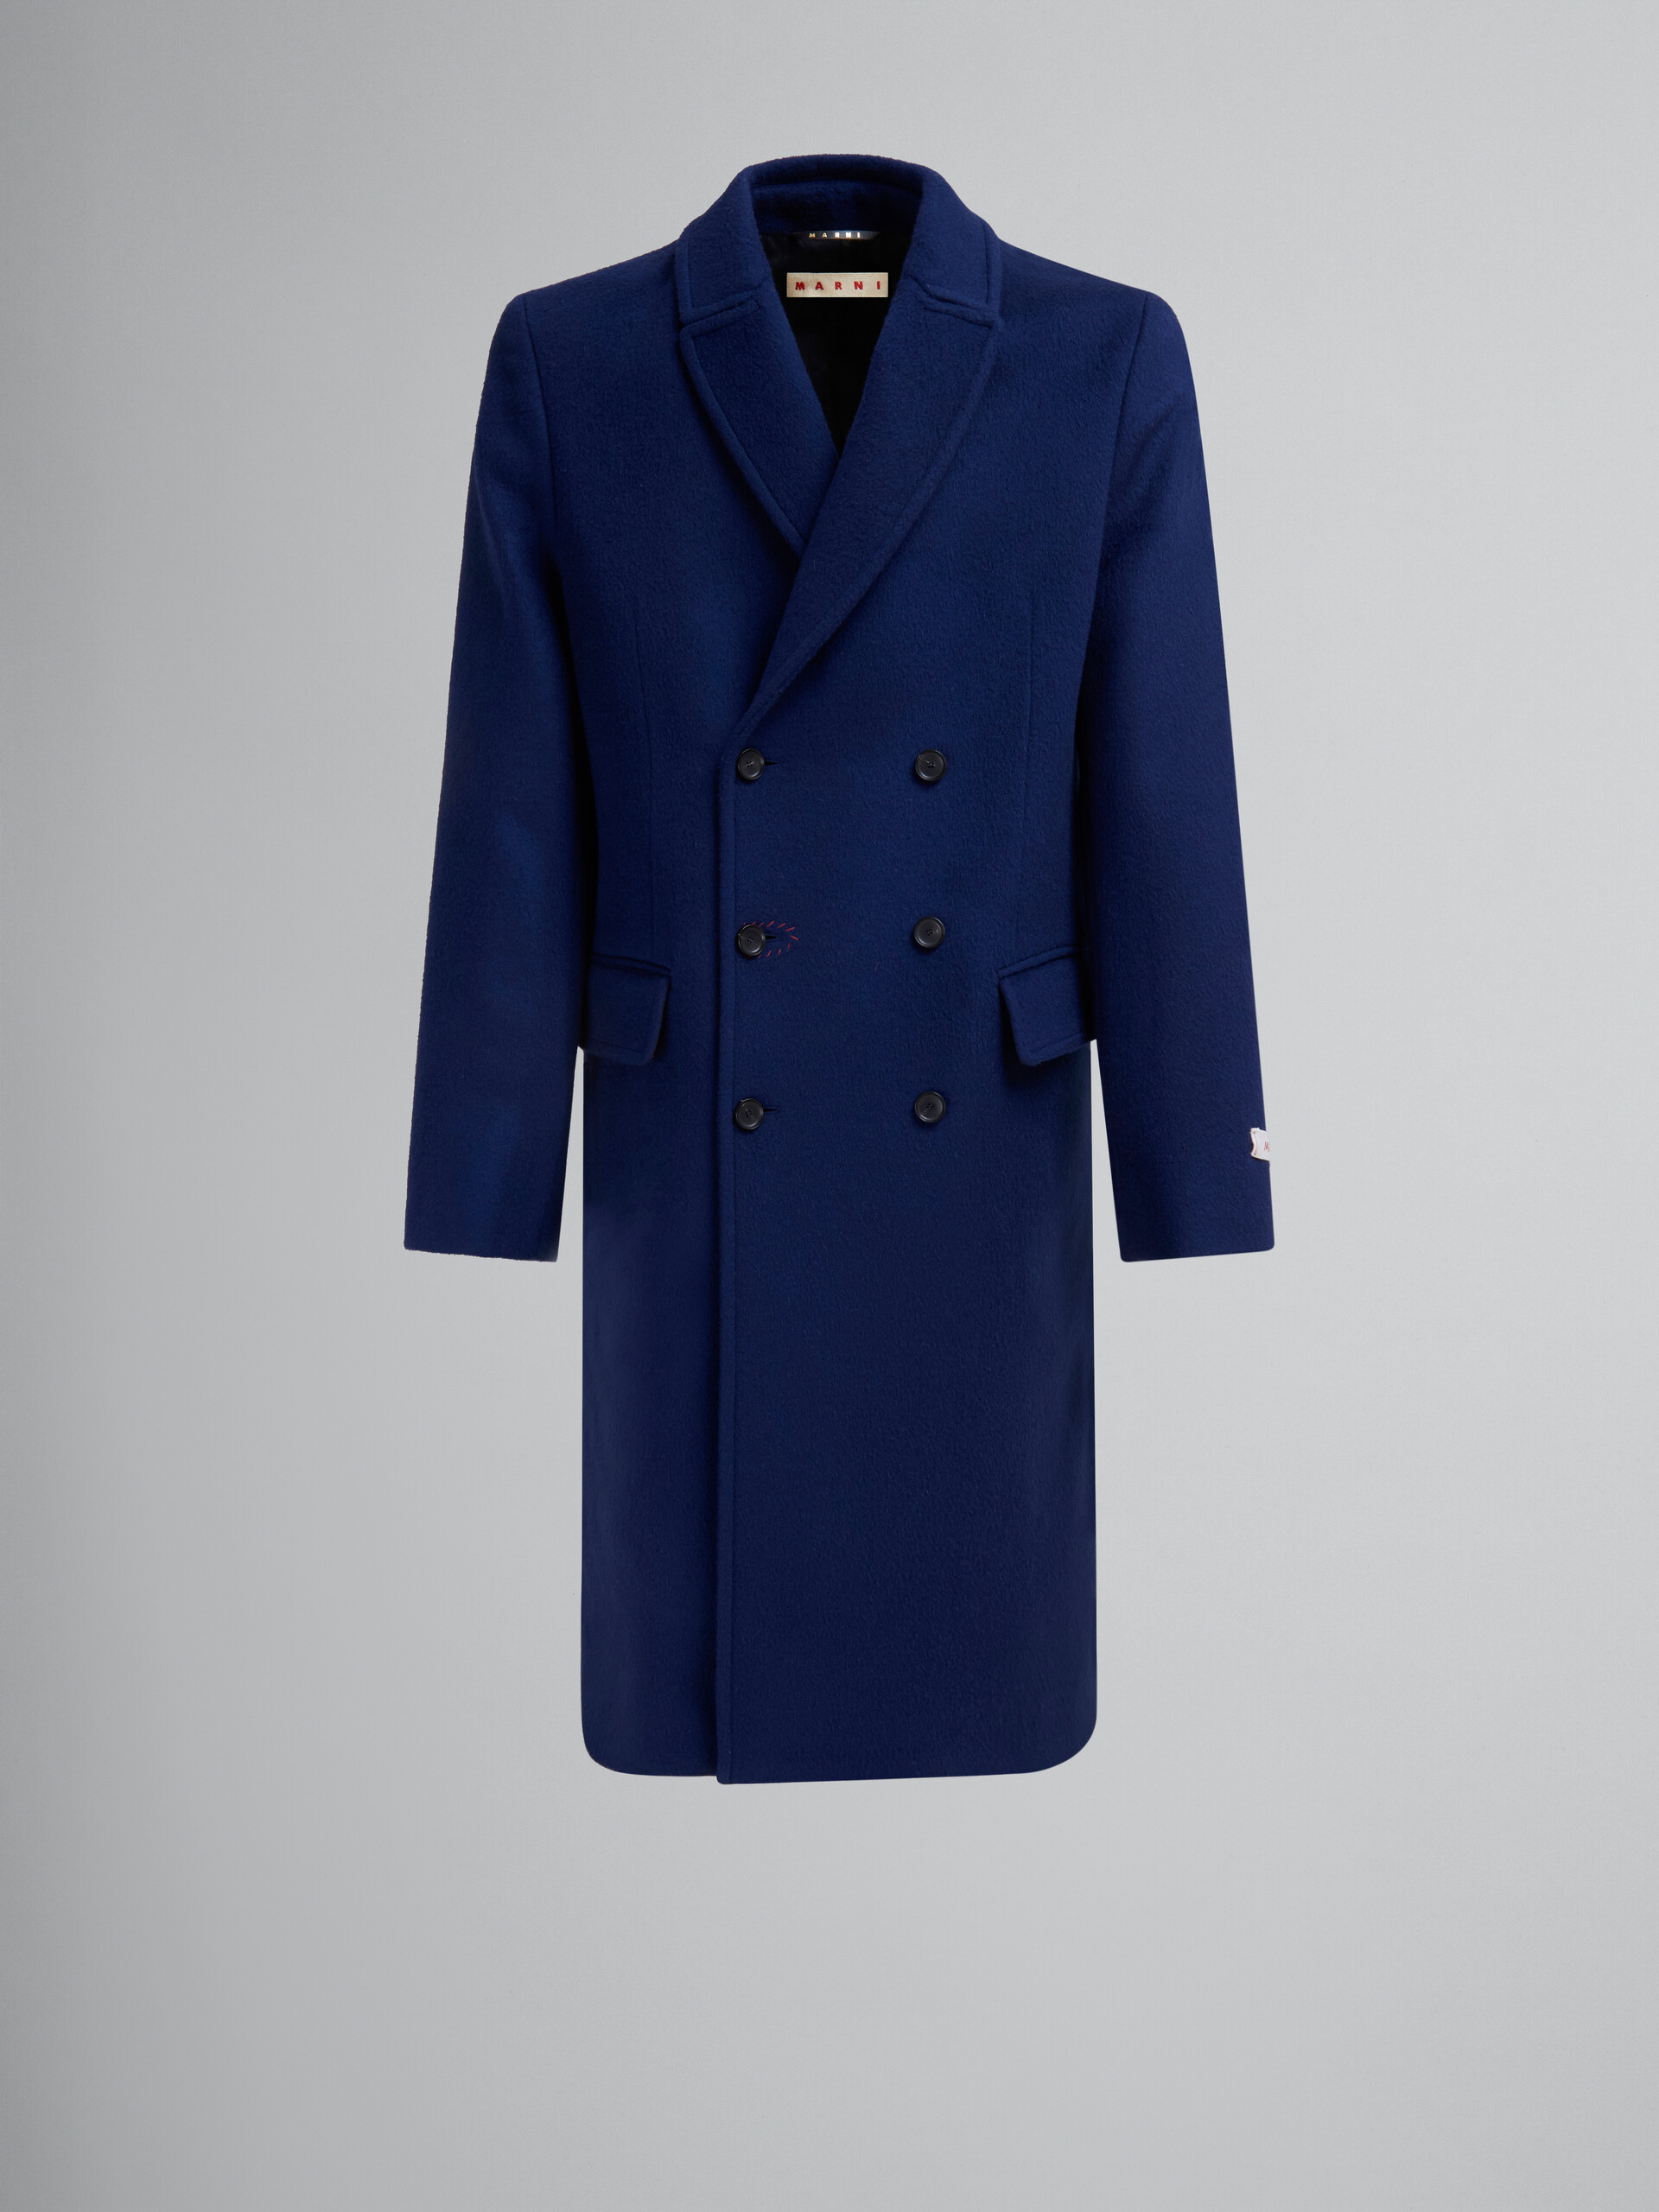 Manteau à double boutonnage en feutre bleu avec effet raccommodé Marni - Vestes - Image 1